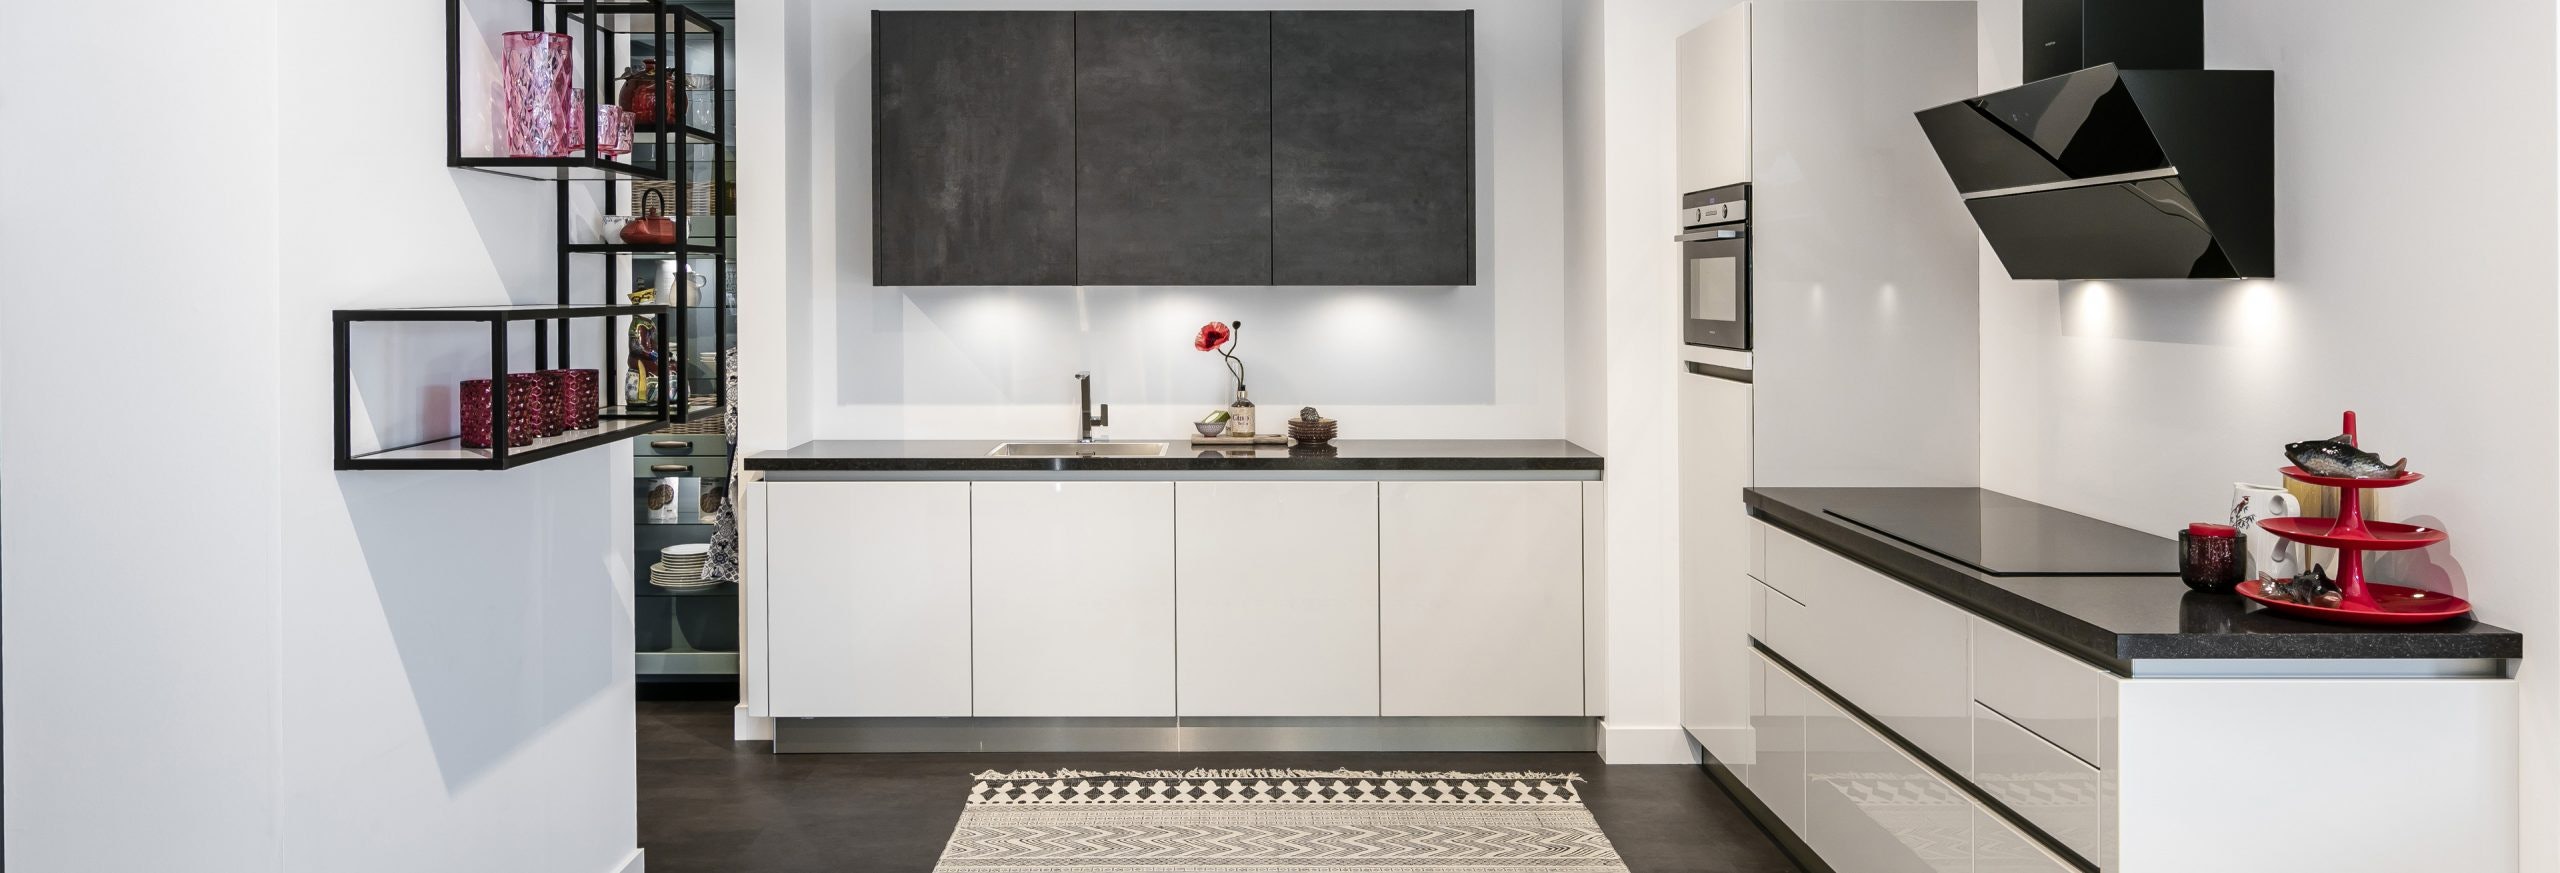 Keuken 1400201 - Trendy witte hoogglans keuken met industriële elementen